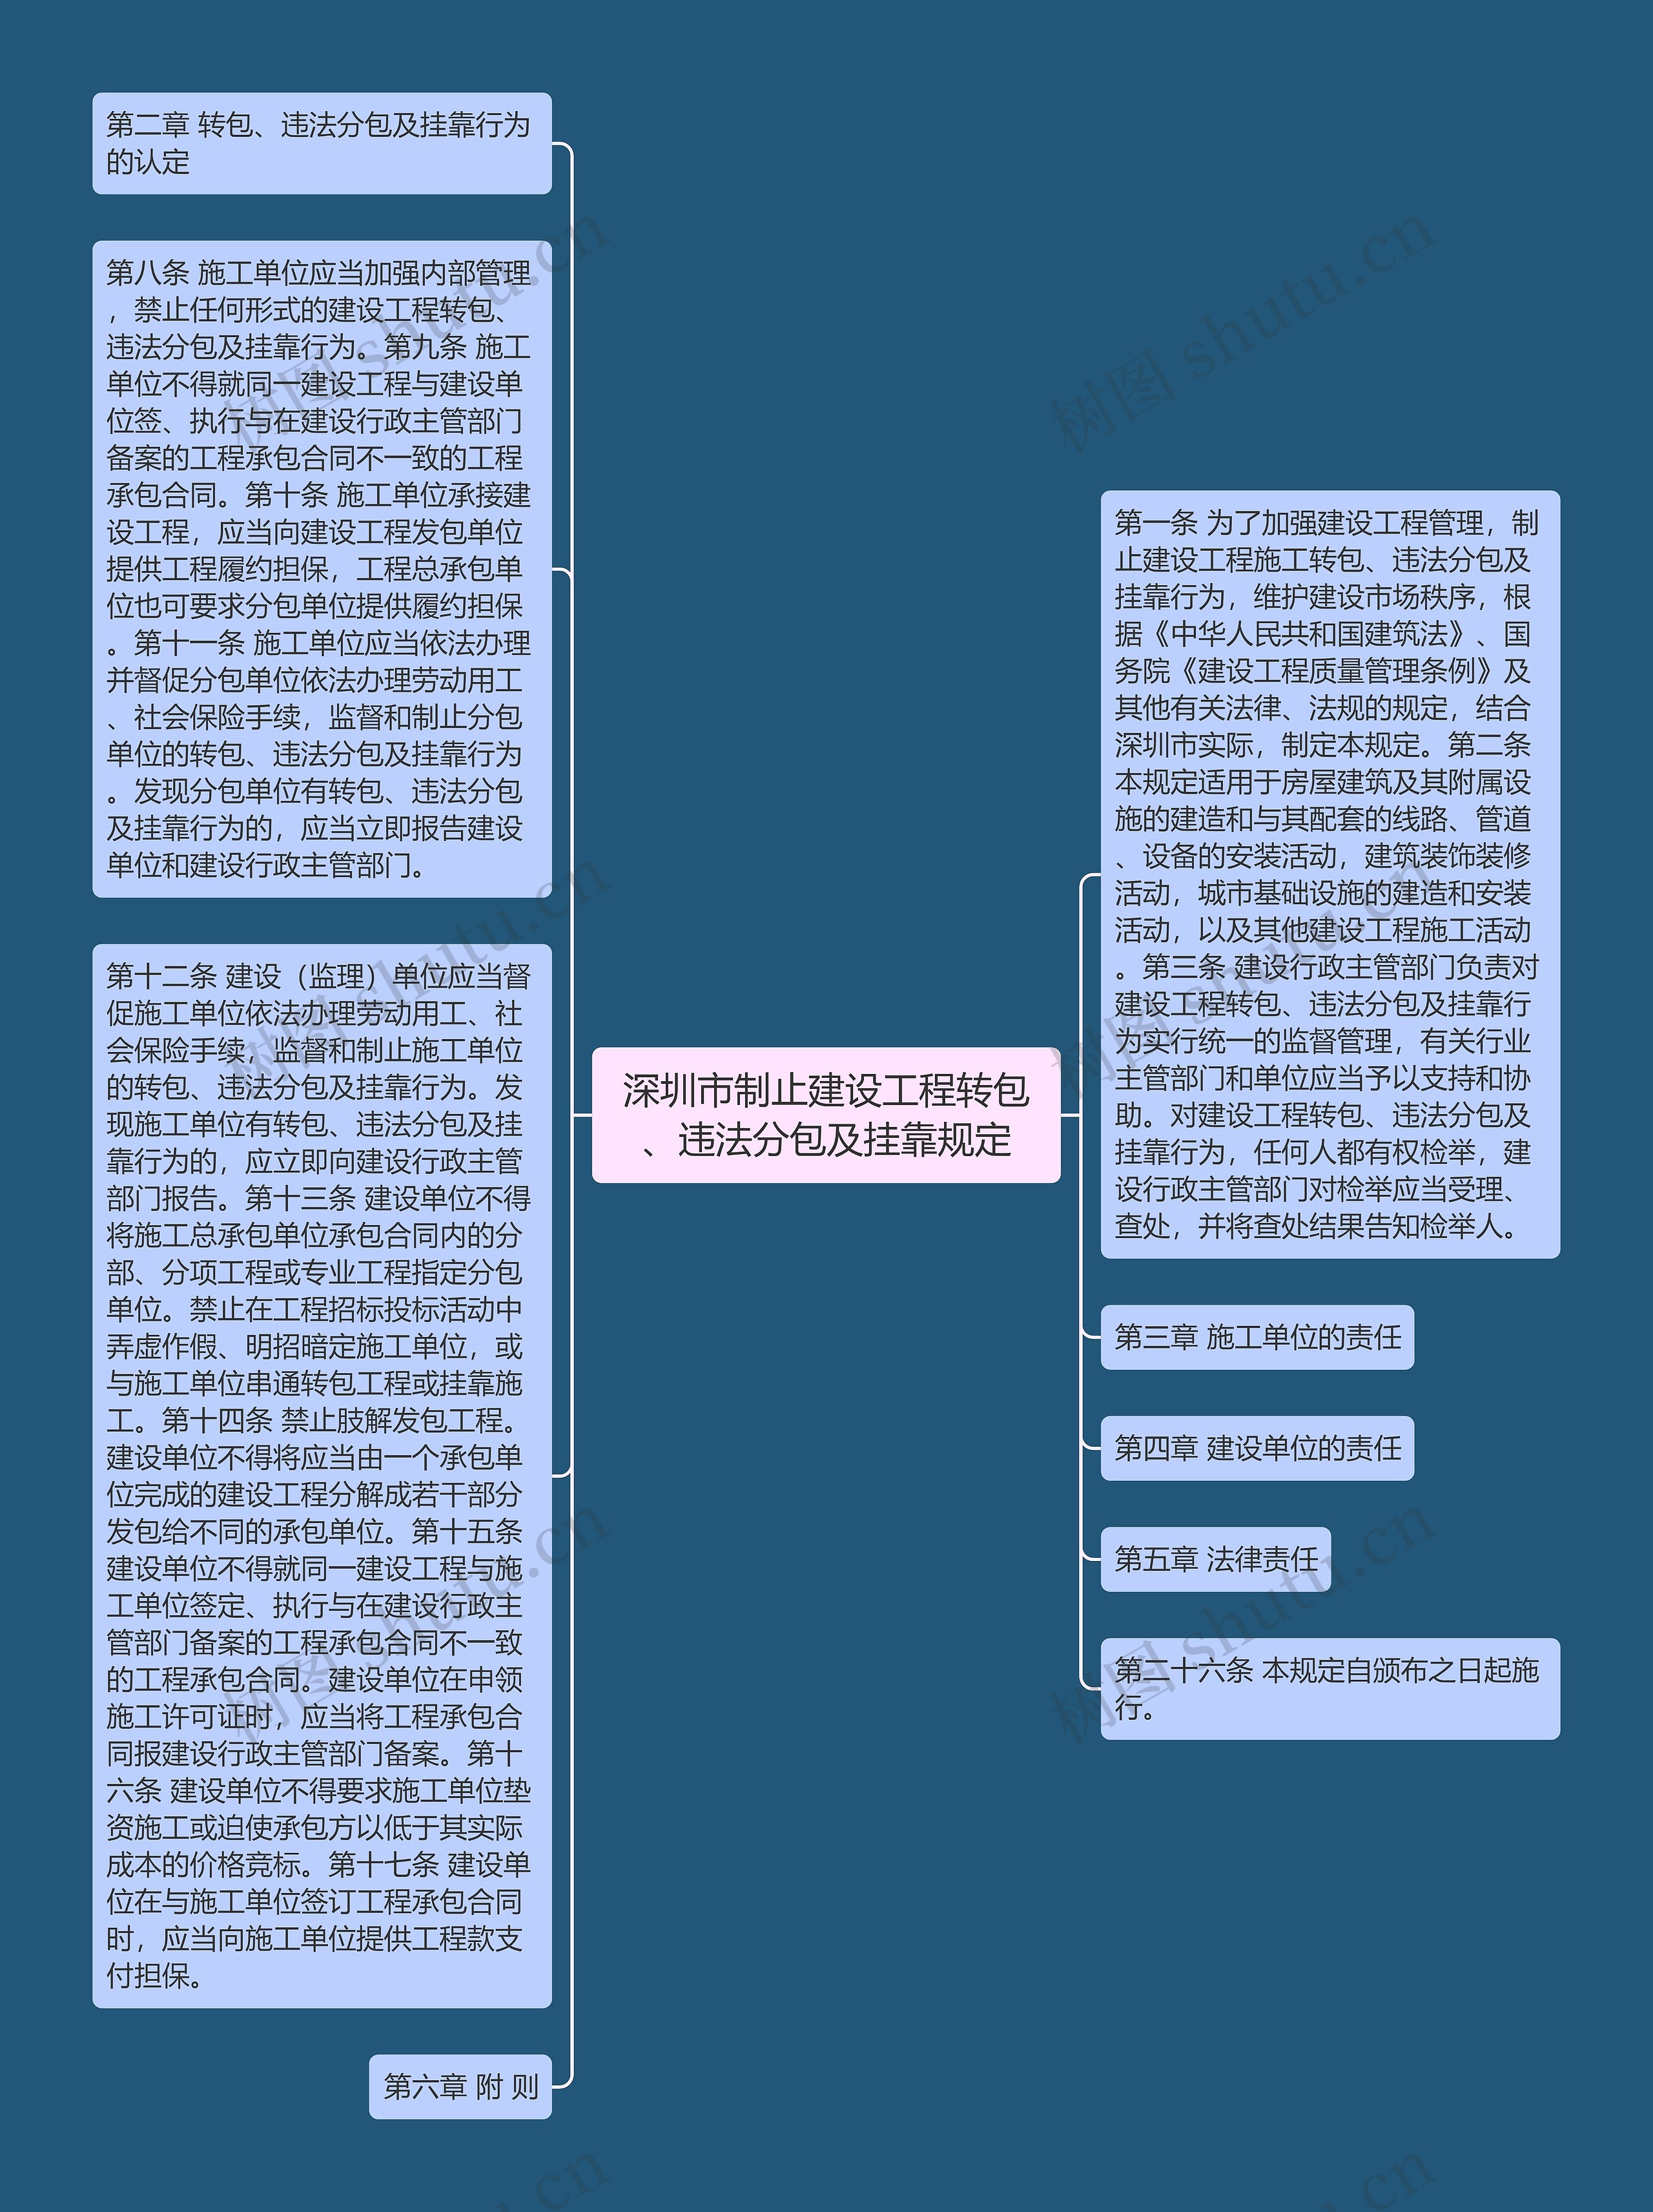 深圳市制止建设工程转包、违法分包及挂靠规定